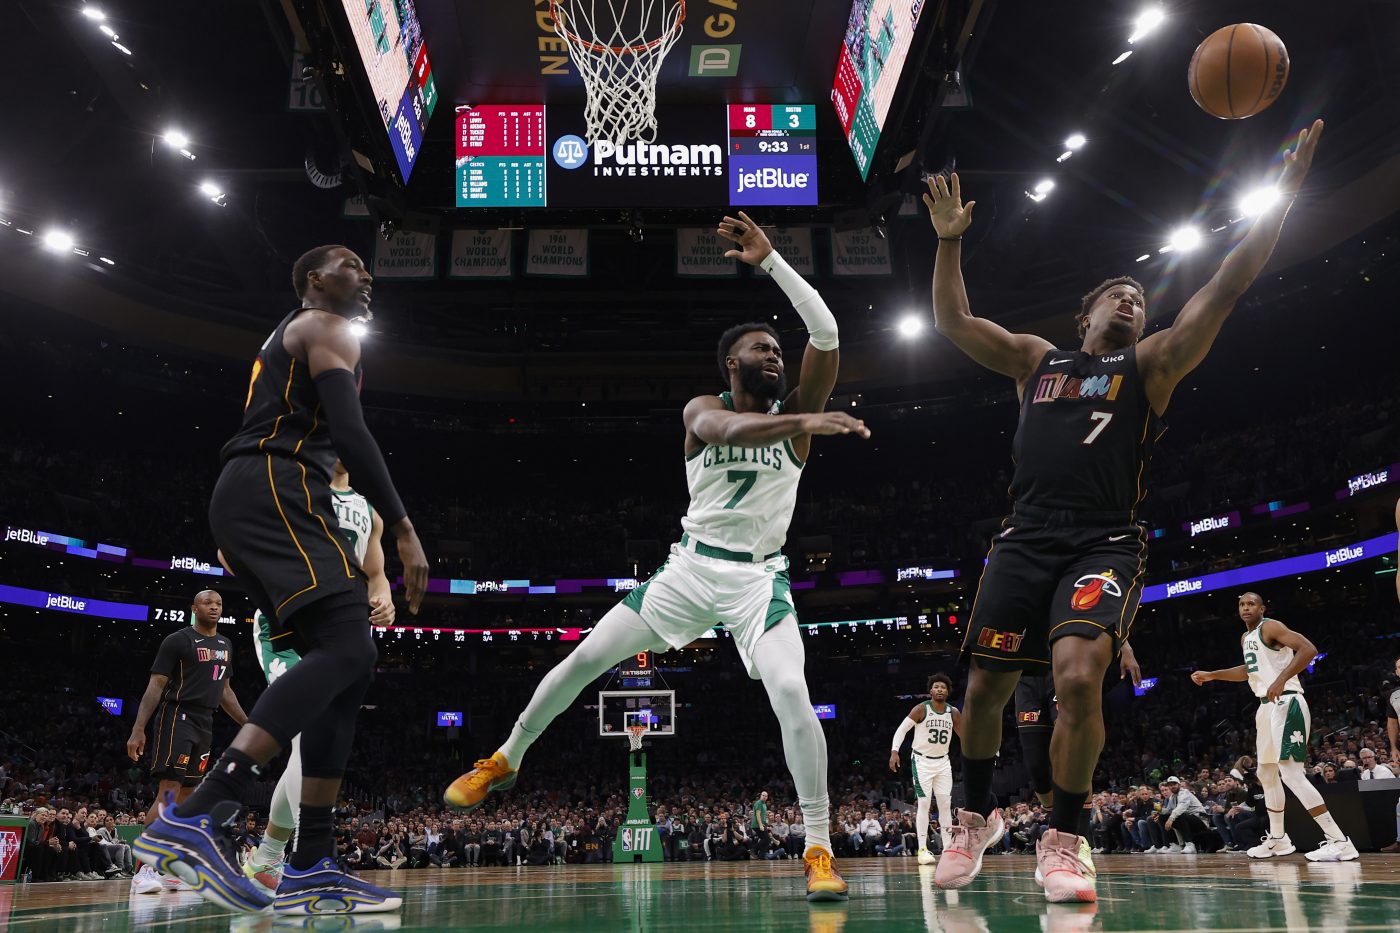 Heat zatrzymują Celtics, straszna pomyłka Poole’a w końcówce, powrót McColluma do Portland